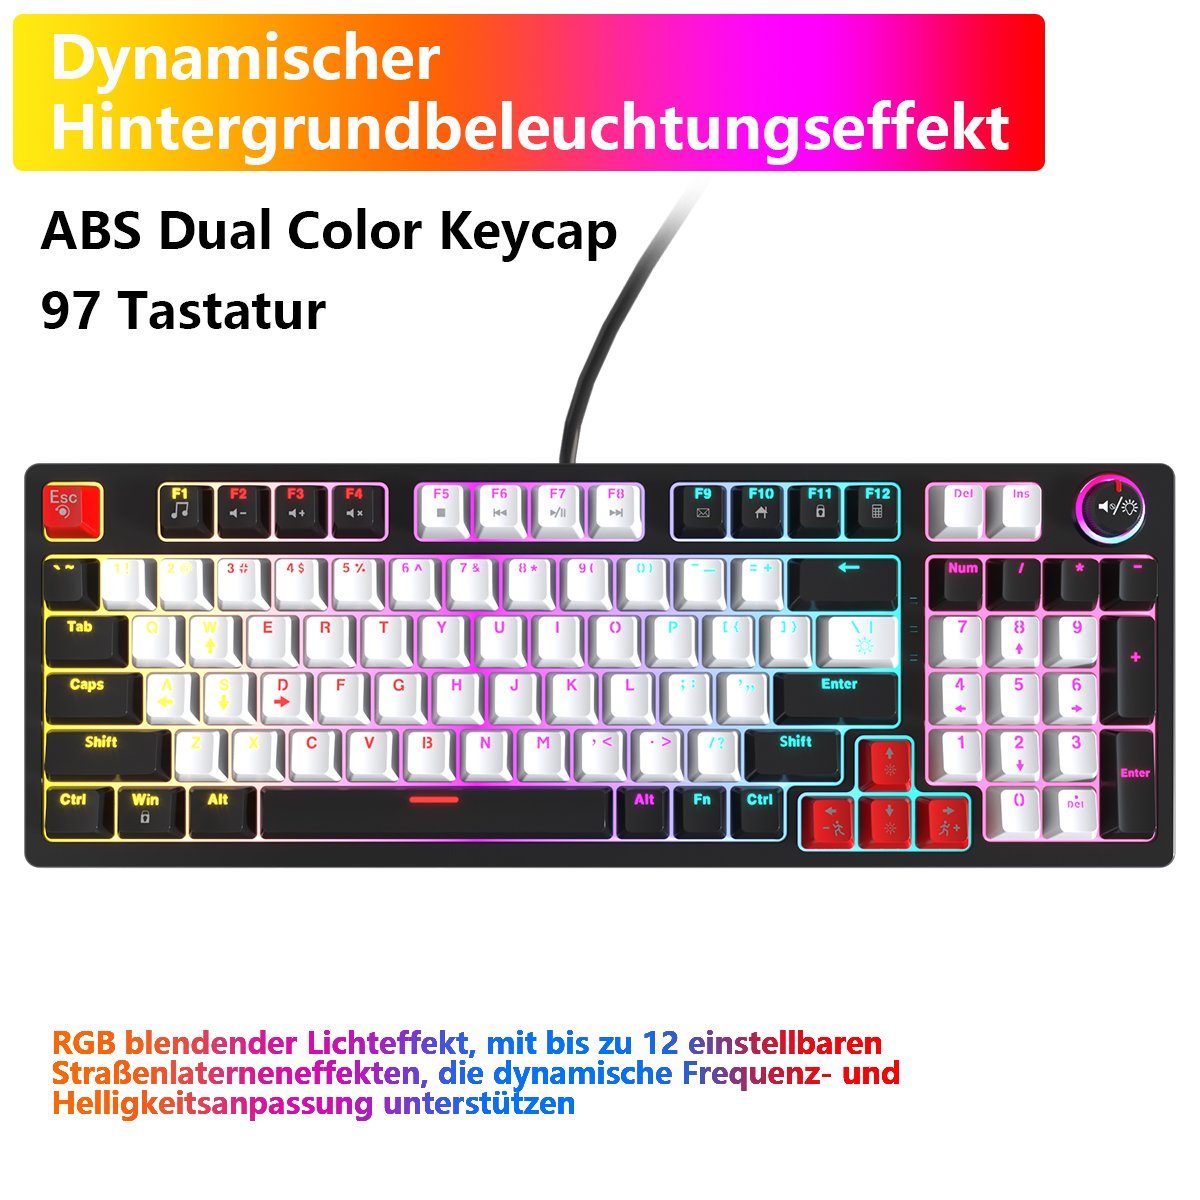 BUMHUM Nicht deutsche Tastatur Echte mechanische Tastatur,RGB-Beleuchtung Gaming-Tastatur (Zweifarbige Doppel- und Dreifarbige RGB-Gaming-Tastatur mit Kabe) schwarz